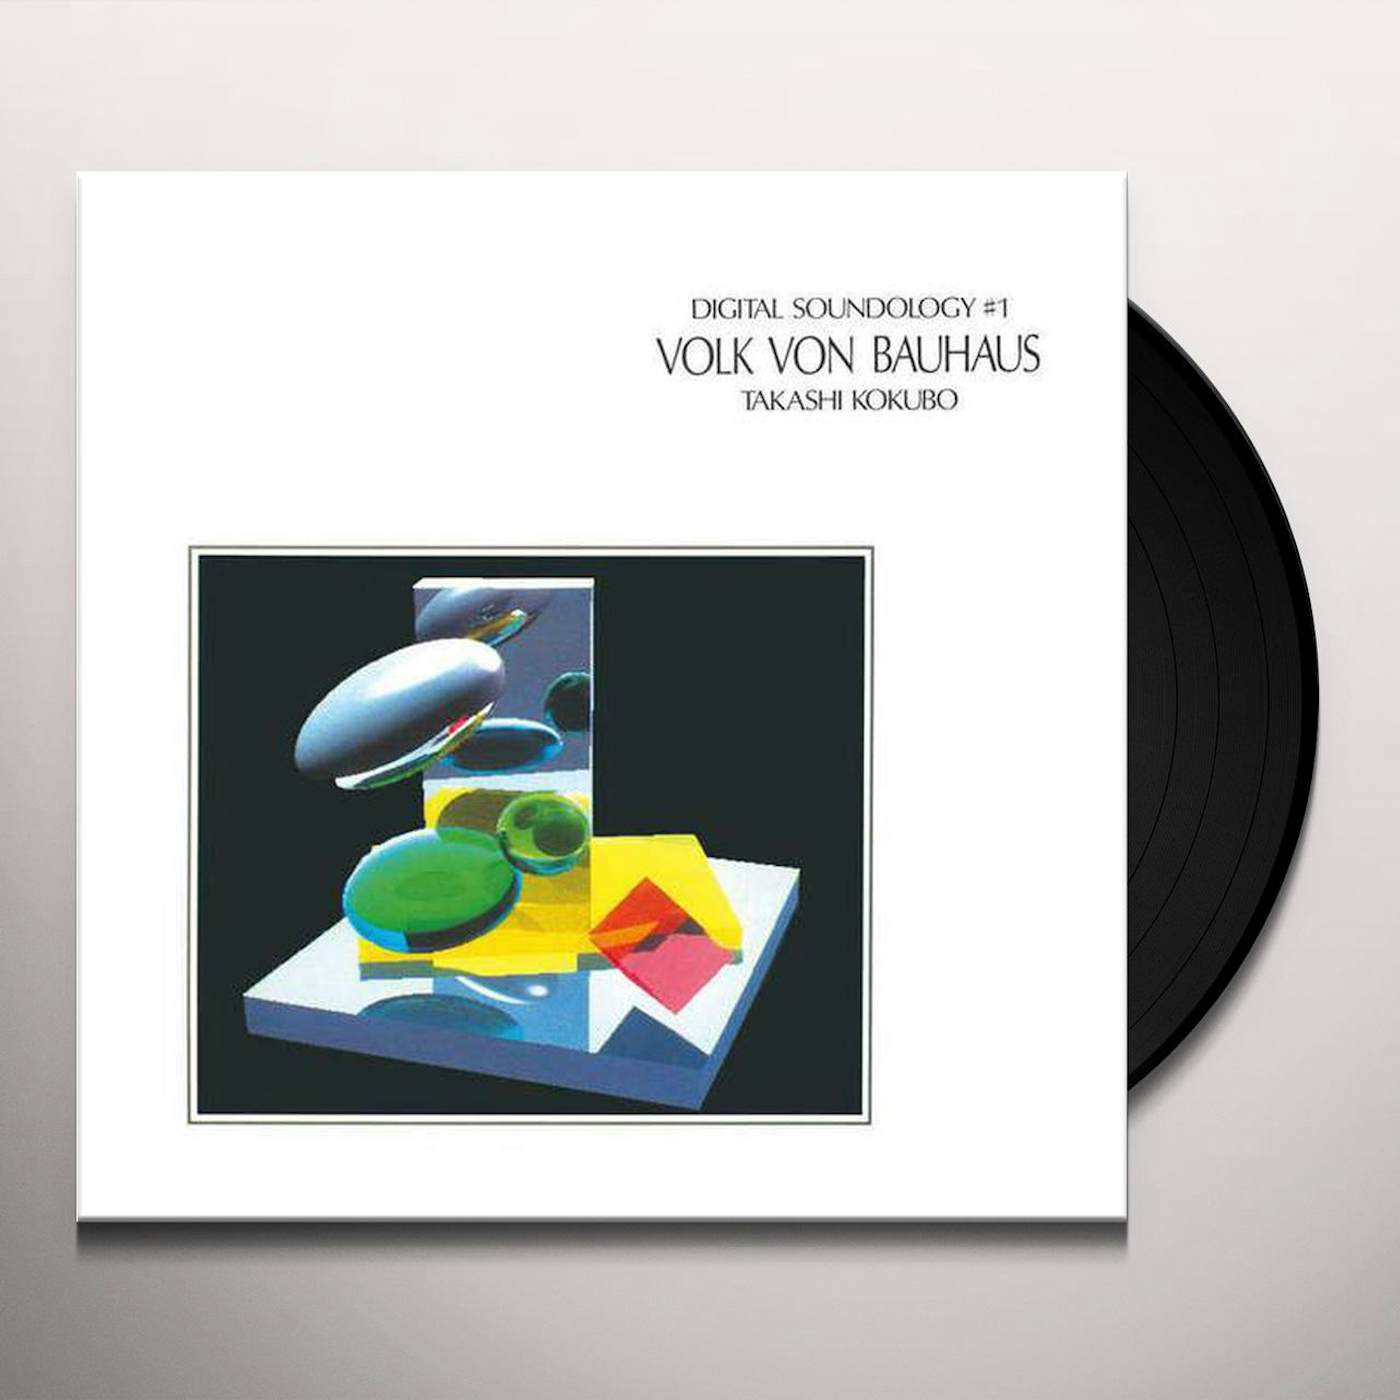 Takashi Kokubo DIGITAL SOUNDOLOGY #1 VOLK VON BAUHAUS Vinyl Record